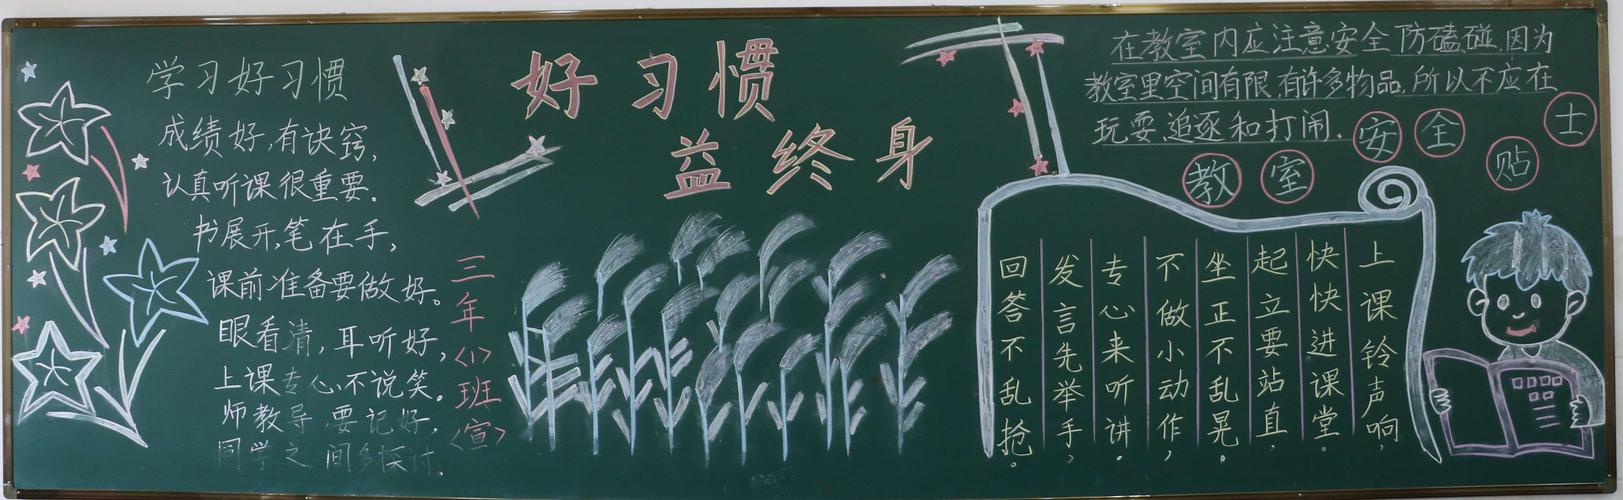 终身昌山小学开展黑板报评比活动 写美篇 为了加强学生学习习惯